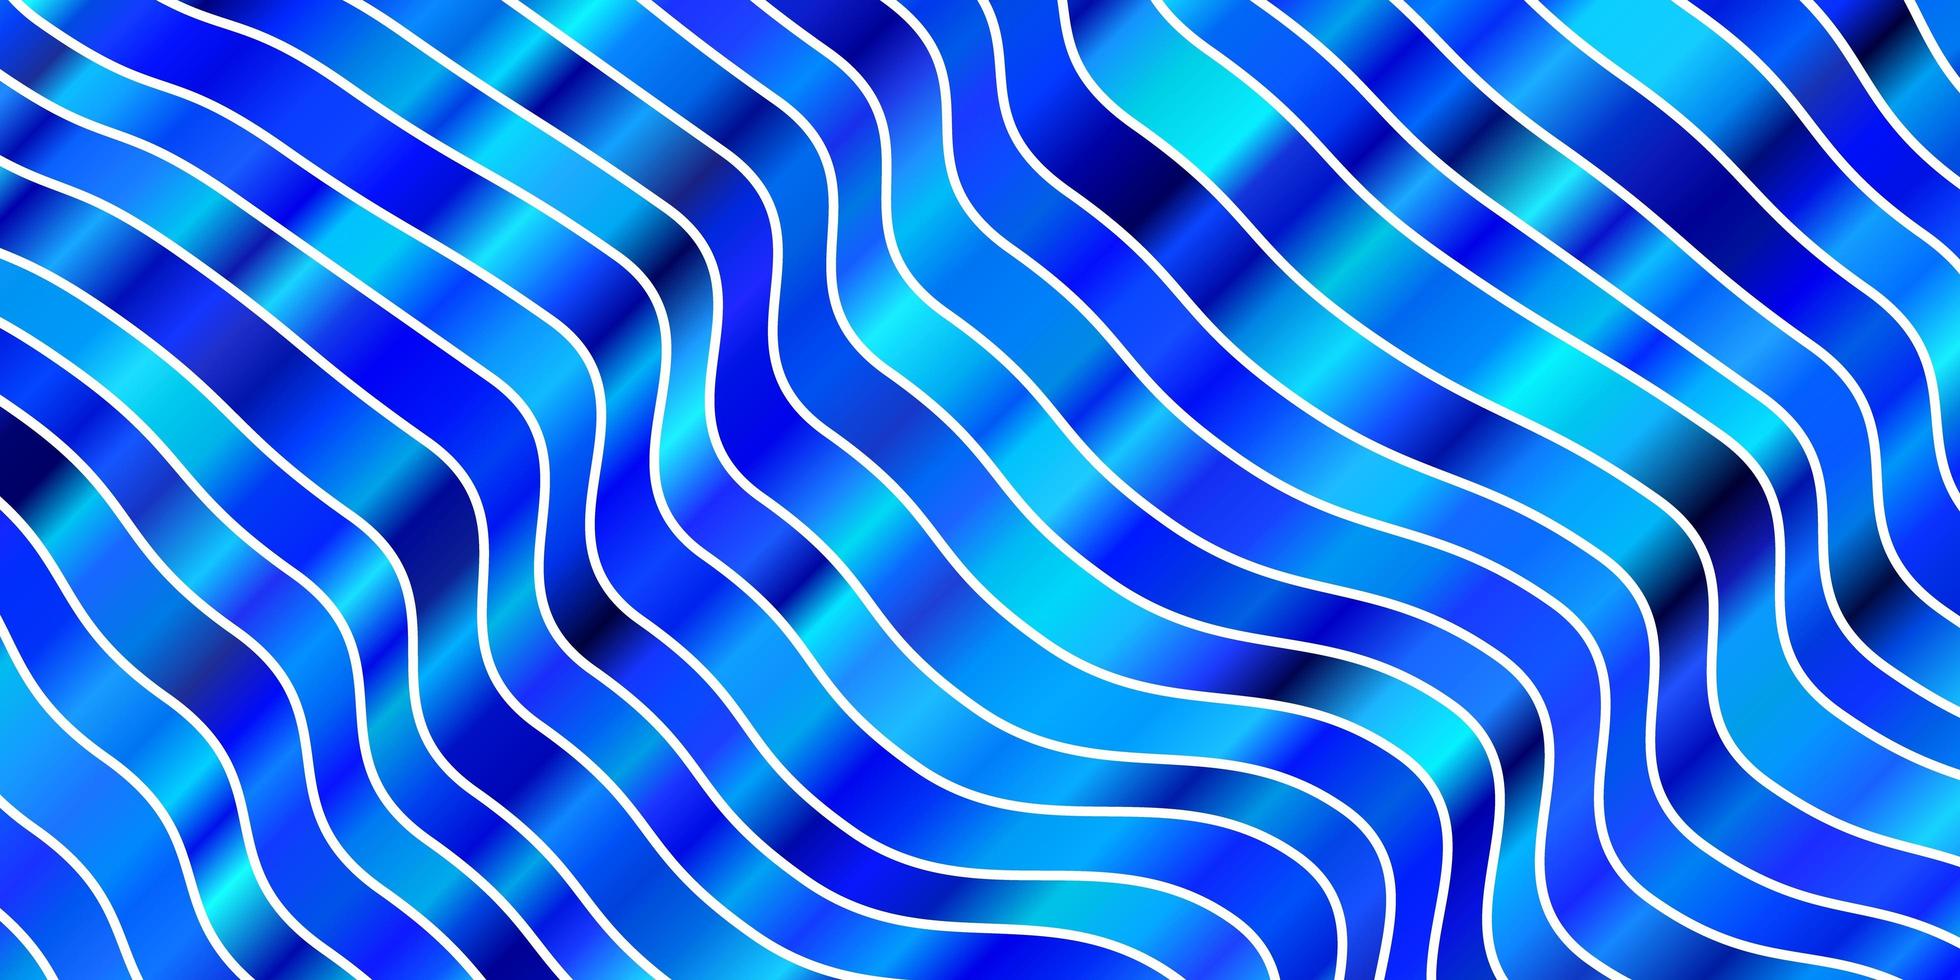 hellblauer Vektorhintergrund mit gebogenen Linien. helle Probe mit bunten gebogenen Linien, Formen. Muster für Werbung, Anzeigen. vektor